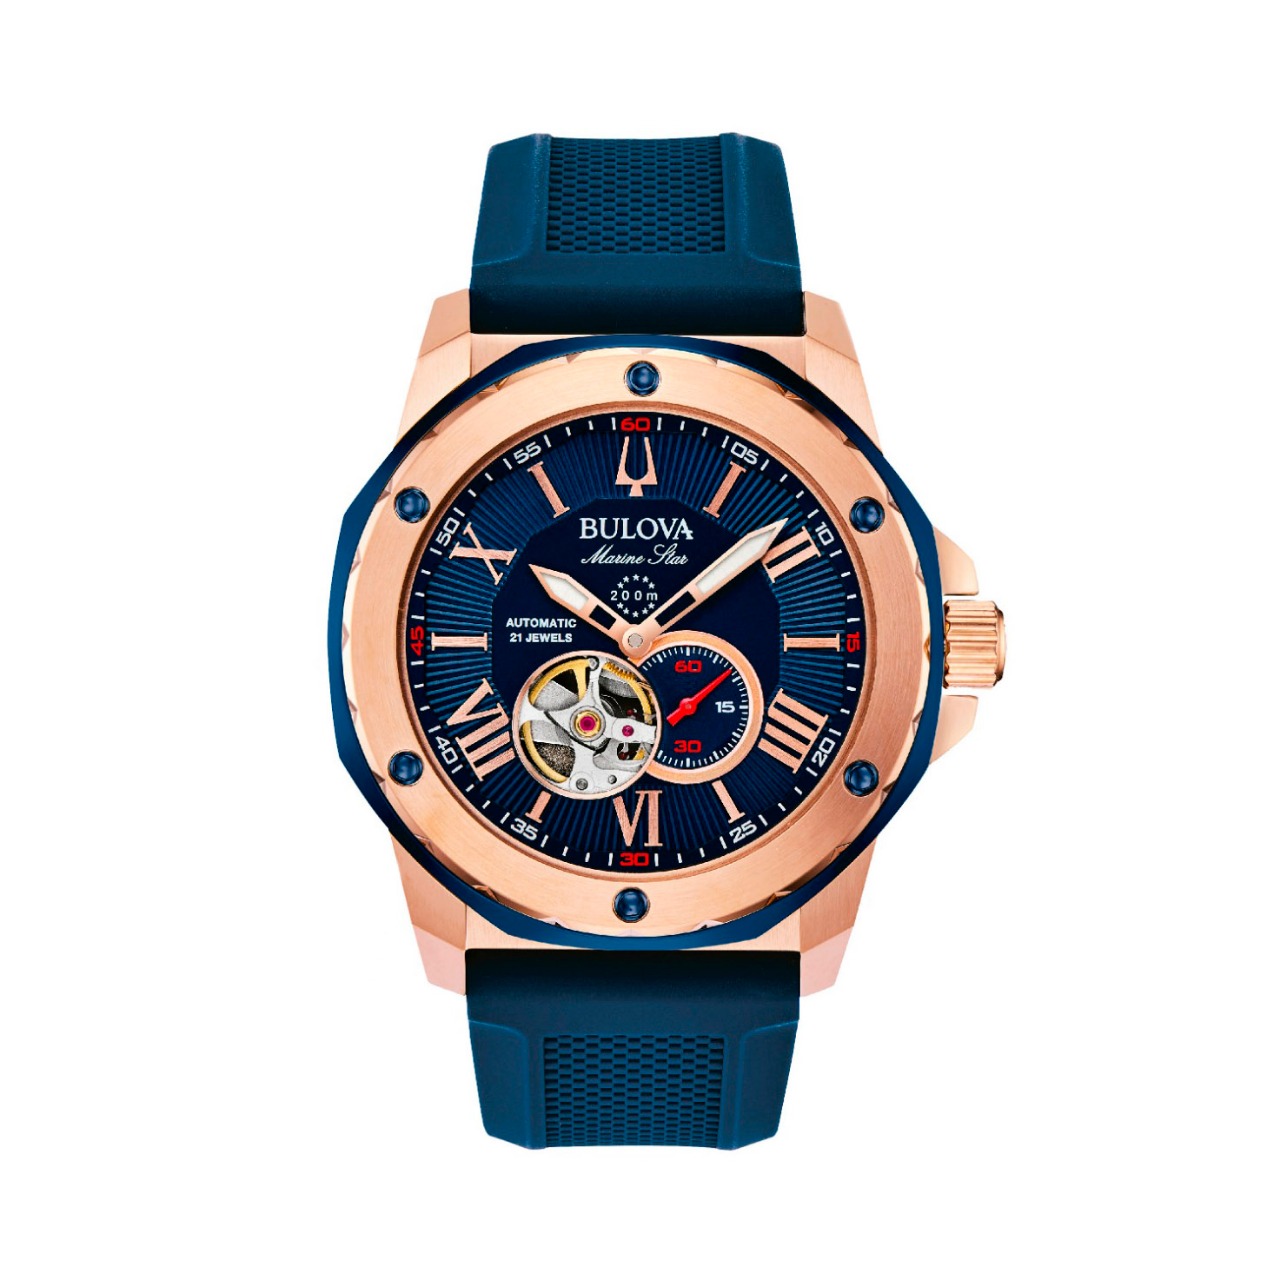 Relógio marca Bulova de tom azul com dourado.